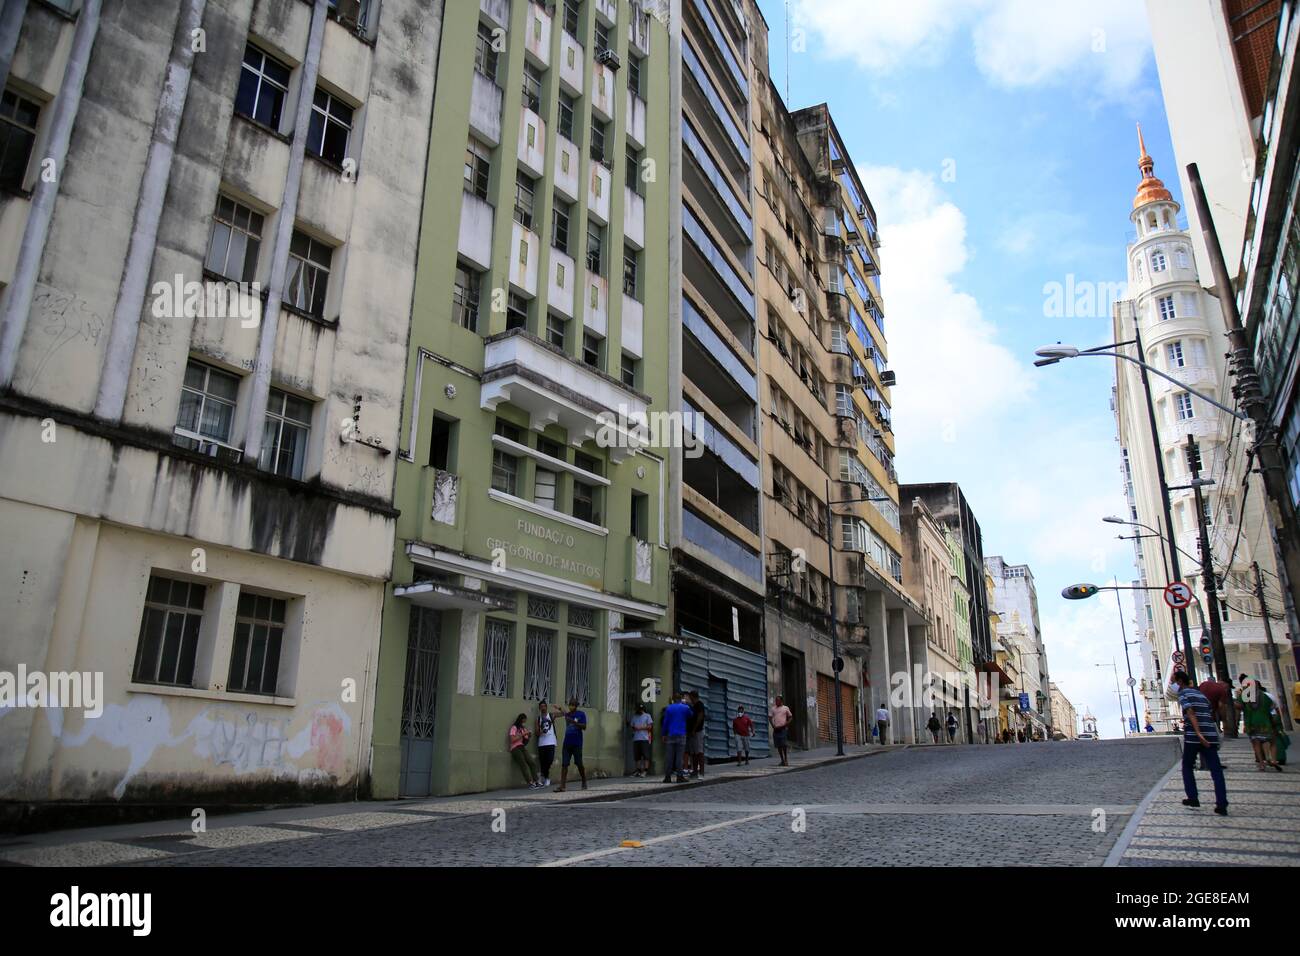 salvador, bahia, brasilien - 17. august 2021: Blick auf alte Gebäude auf der Rua Chile, dem historischen Zentrum der Stadt Salvador. Stockfoto